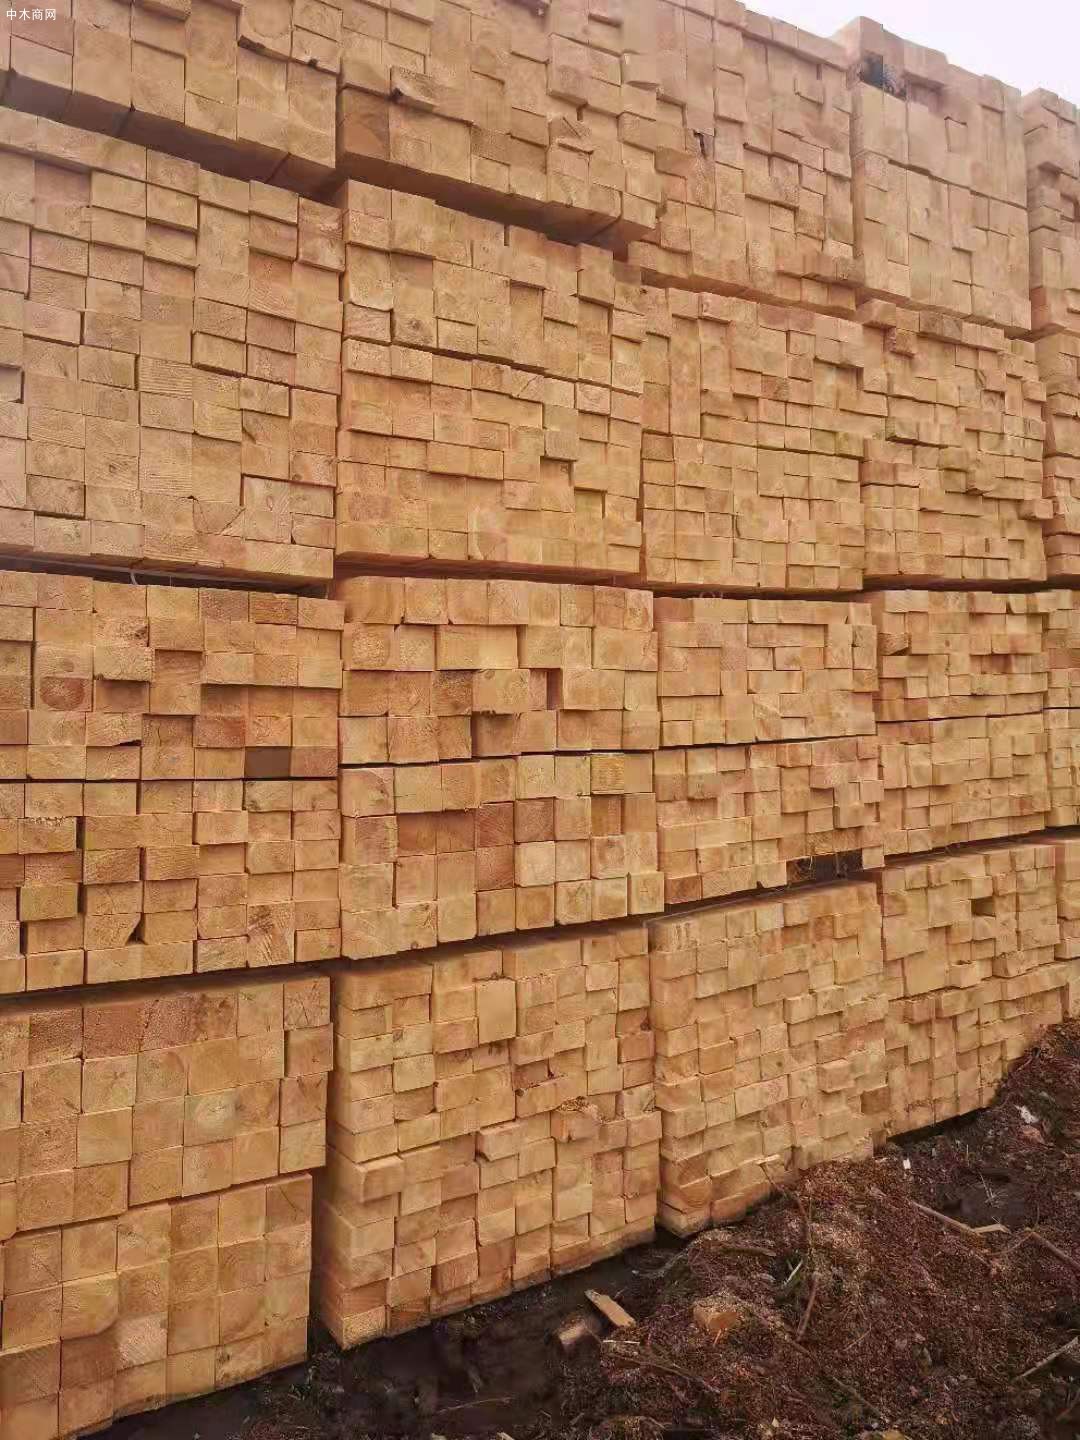 俄罗斯樟子松防腐木供应商质量材质上乘